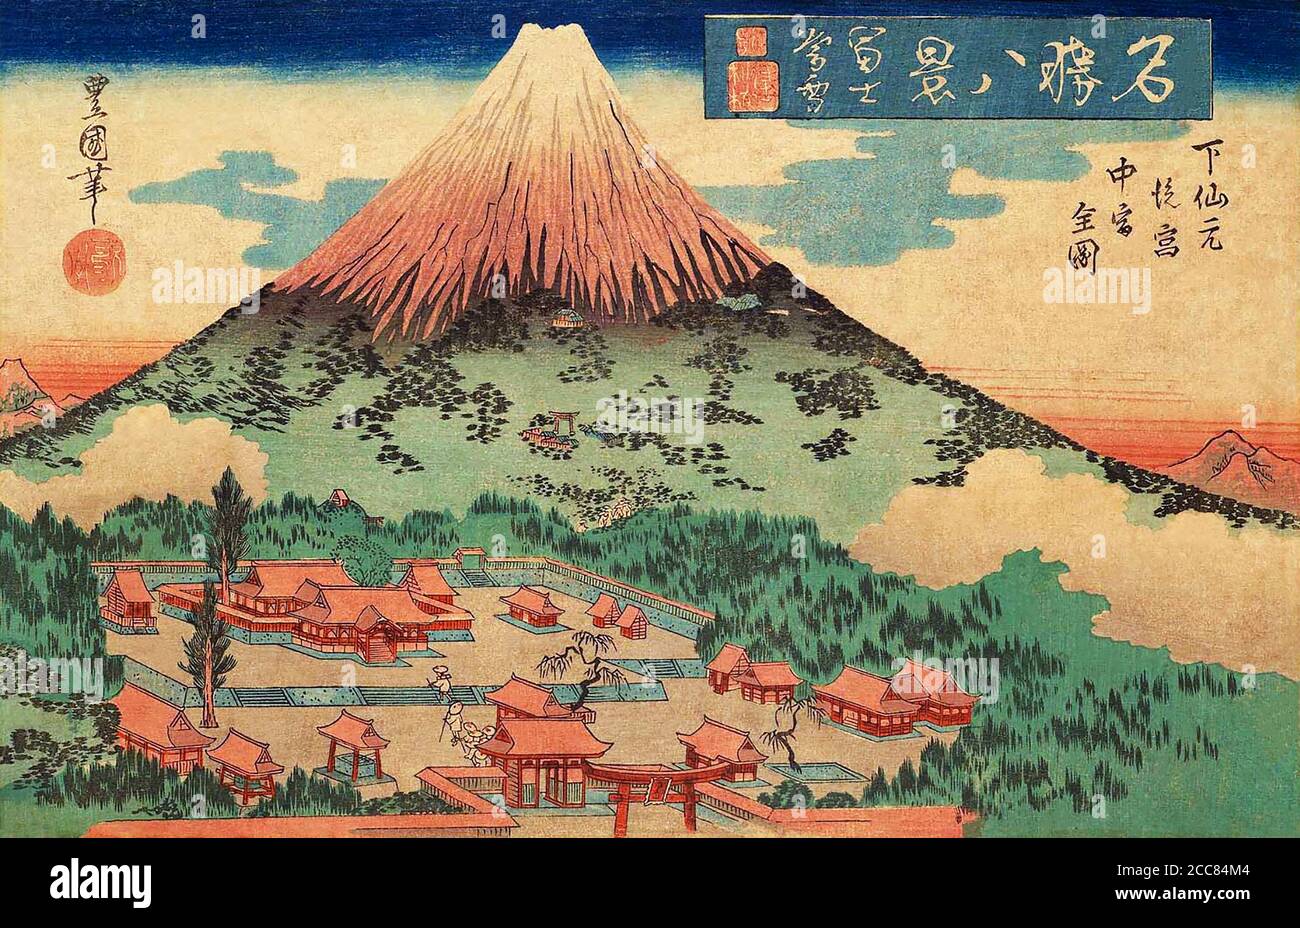 Japan: 'Dämmerschnee auf dem Fuji-Berg: Vollständige Ansicht des Back Shrine und des Middle Shrine bei Shimo Sengen'. Aus der Serie "Acht Ansichten berühmter Orte" von Utagawa Toyokuni II (1777-1835), c.. 1833-1834. Utagawa Toyokuni II, auch bekannt als Toyoshige, war ein Ukiyo-e Holzschnitt Künstler in Edo. Er war Schüler und Schwiegersohn von Utagawa Toyokuni I und begann erst nach seinem Tod 1825 den Namen seines Lehrers zu verwenden. Kunisada, ein anderer Schüler von Toyokuni I, erkannte Toyoshiges Behauptungen nicht an und erklärte sich selbst als "Toyokuni" und wurde Leiter der Schule. Toyoshige nahm die Unterzeichnung seiner Arbeit "Toyoshi Stockfoto